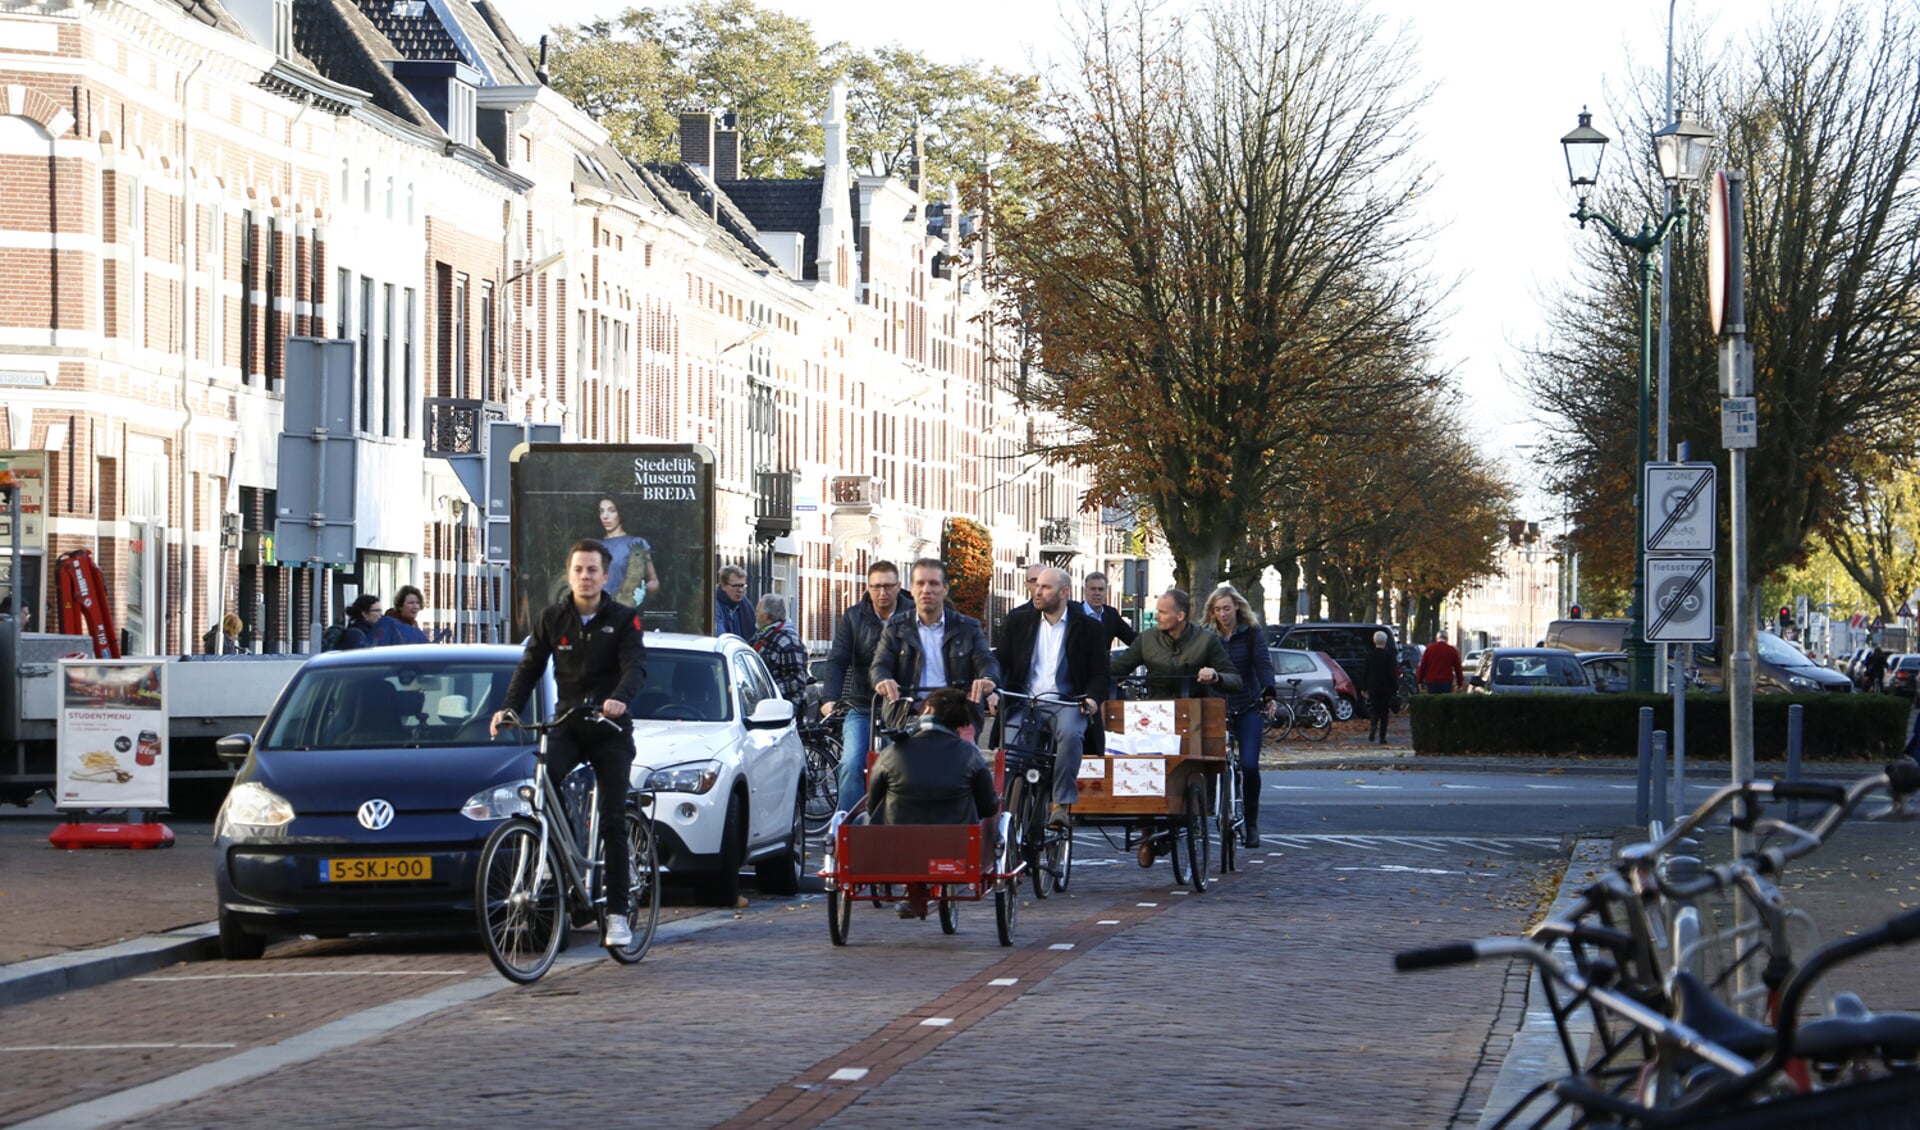 De jury van de verkiezing Beste Binnenstad bezoekt Breda.